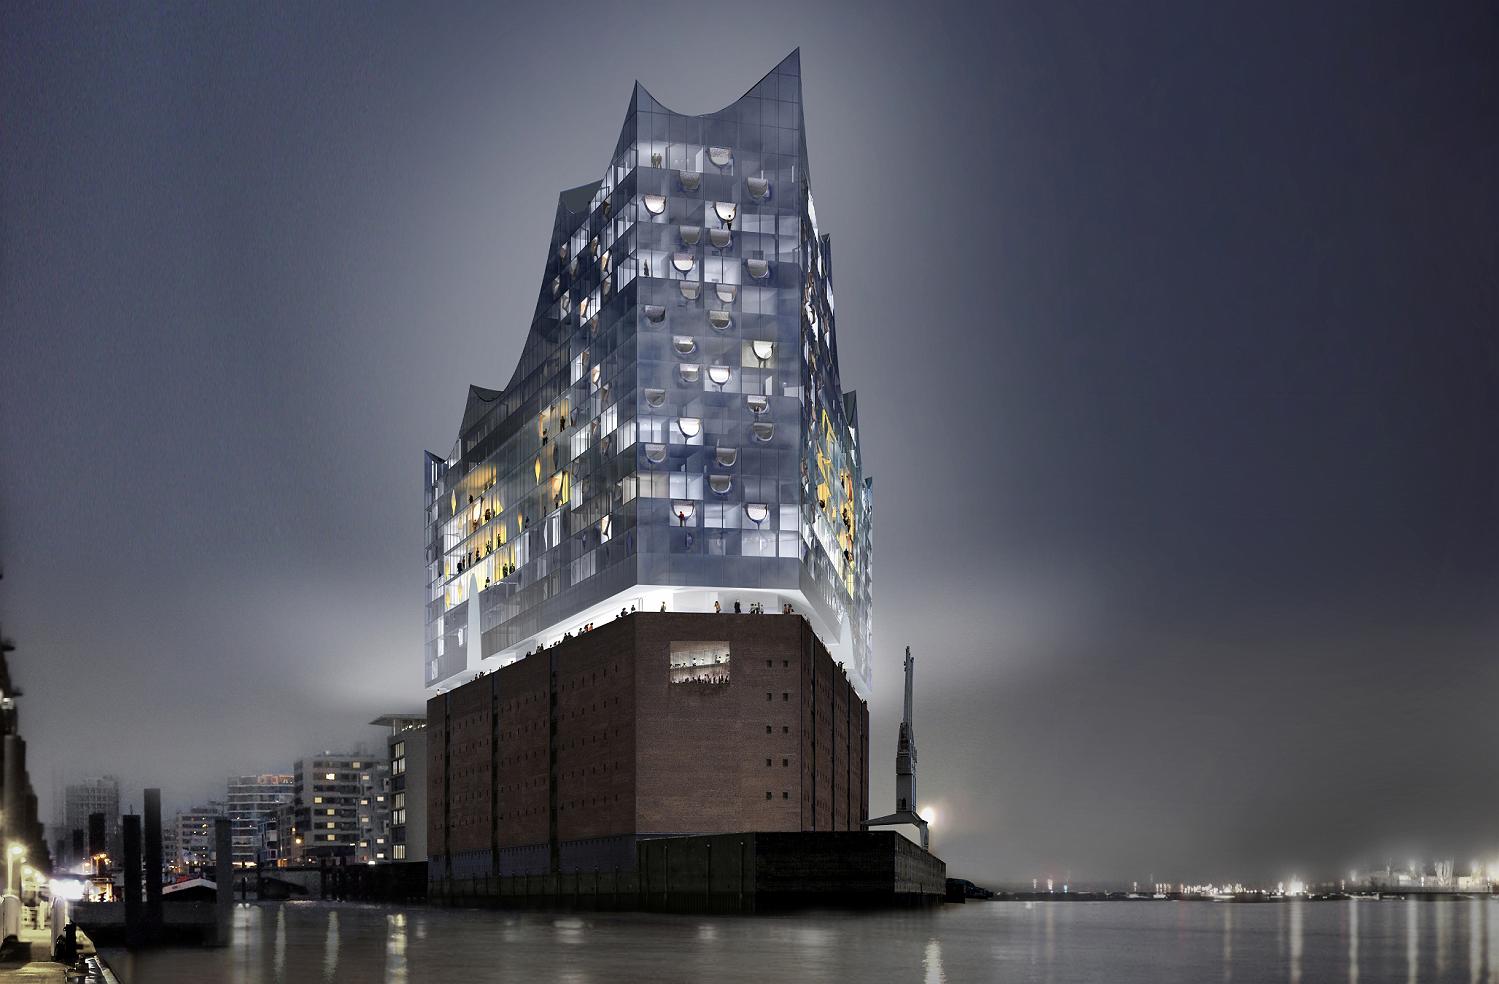 Markantes neues Wahrzeichen von Hamburg: Mit der Eröffnung der Elbphilharmonie Anfang 2017 wird auch ein Westin Hotel mit 244 Zimmern eingeweiht